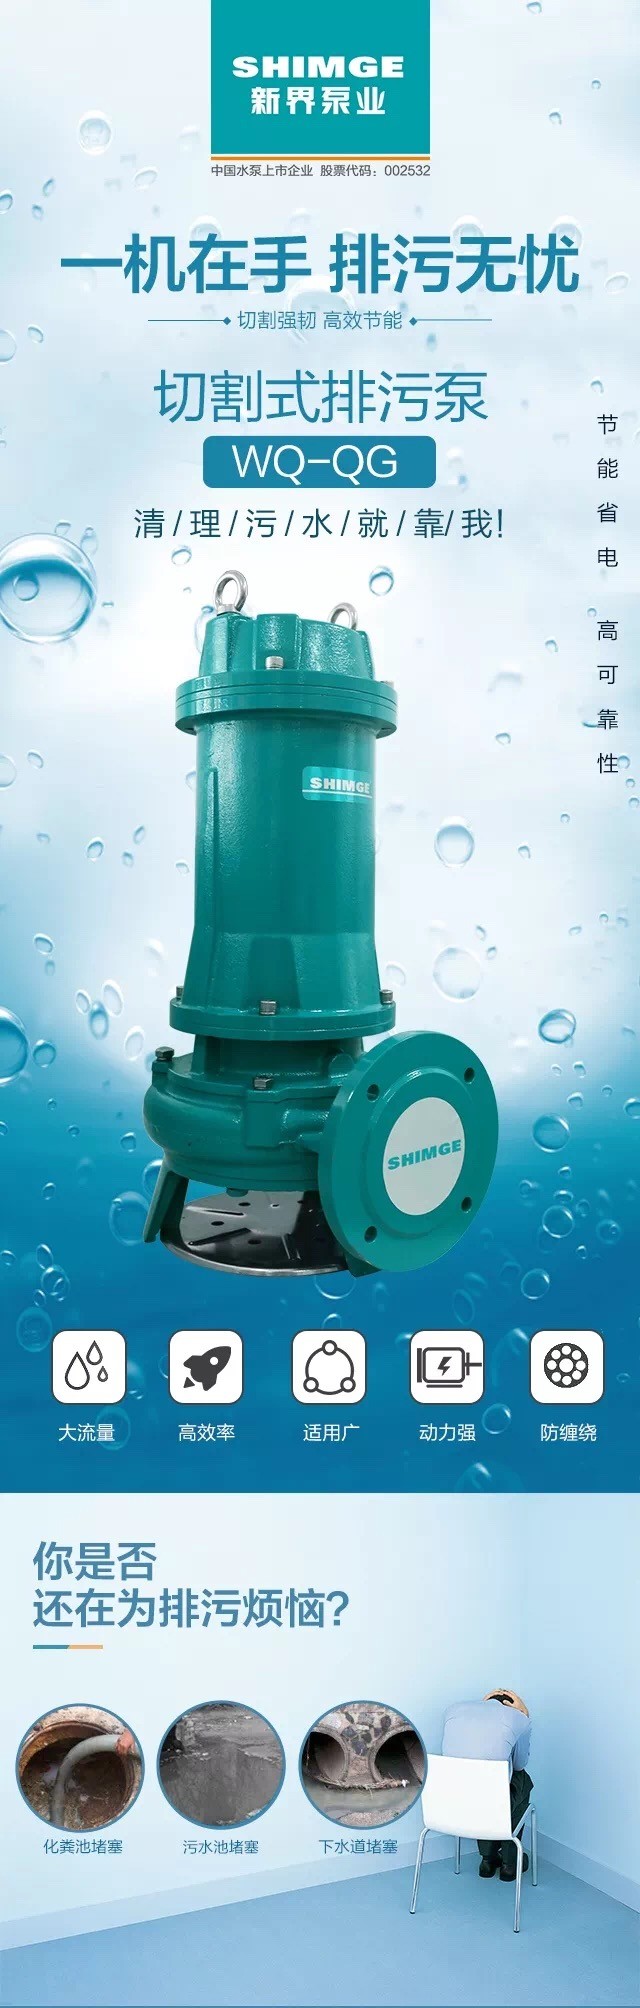 新界切割式污水泵单相/三相工业污水潜水泵家用化粪池抽粪排污泵详情2